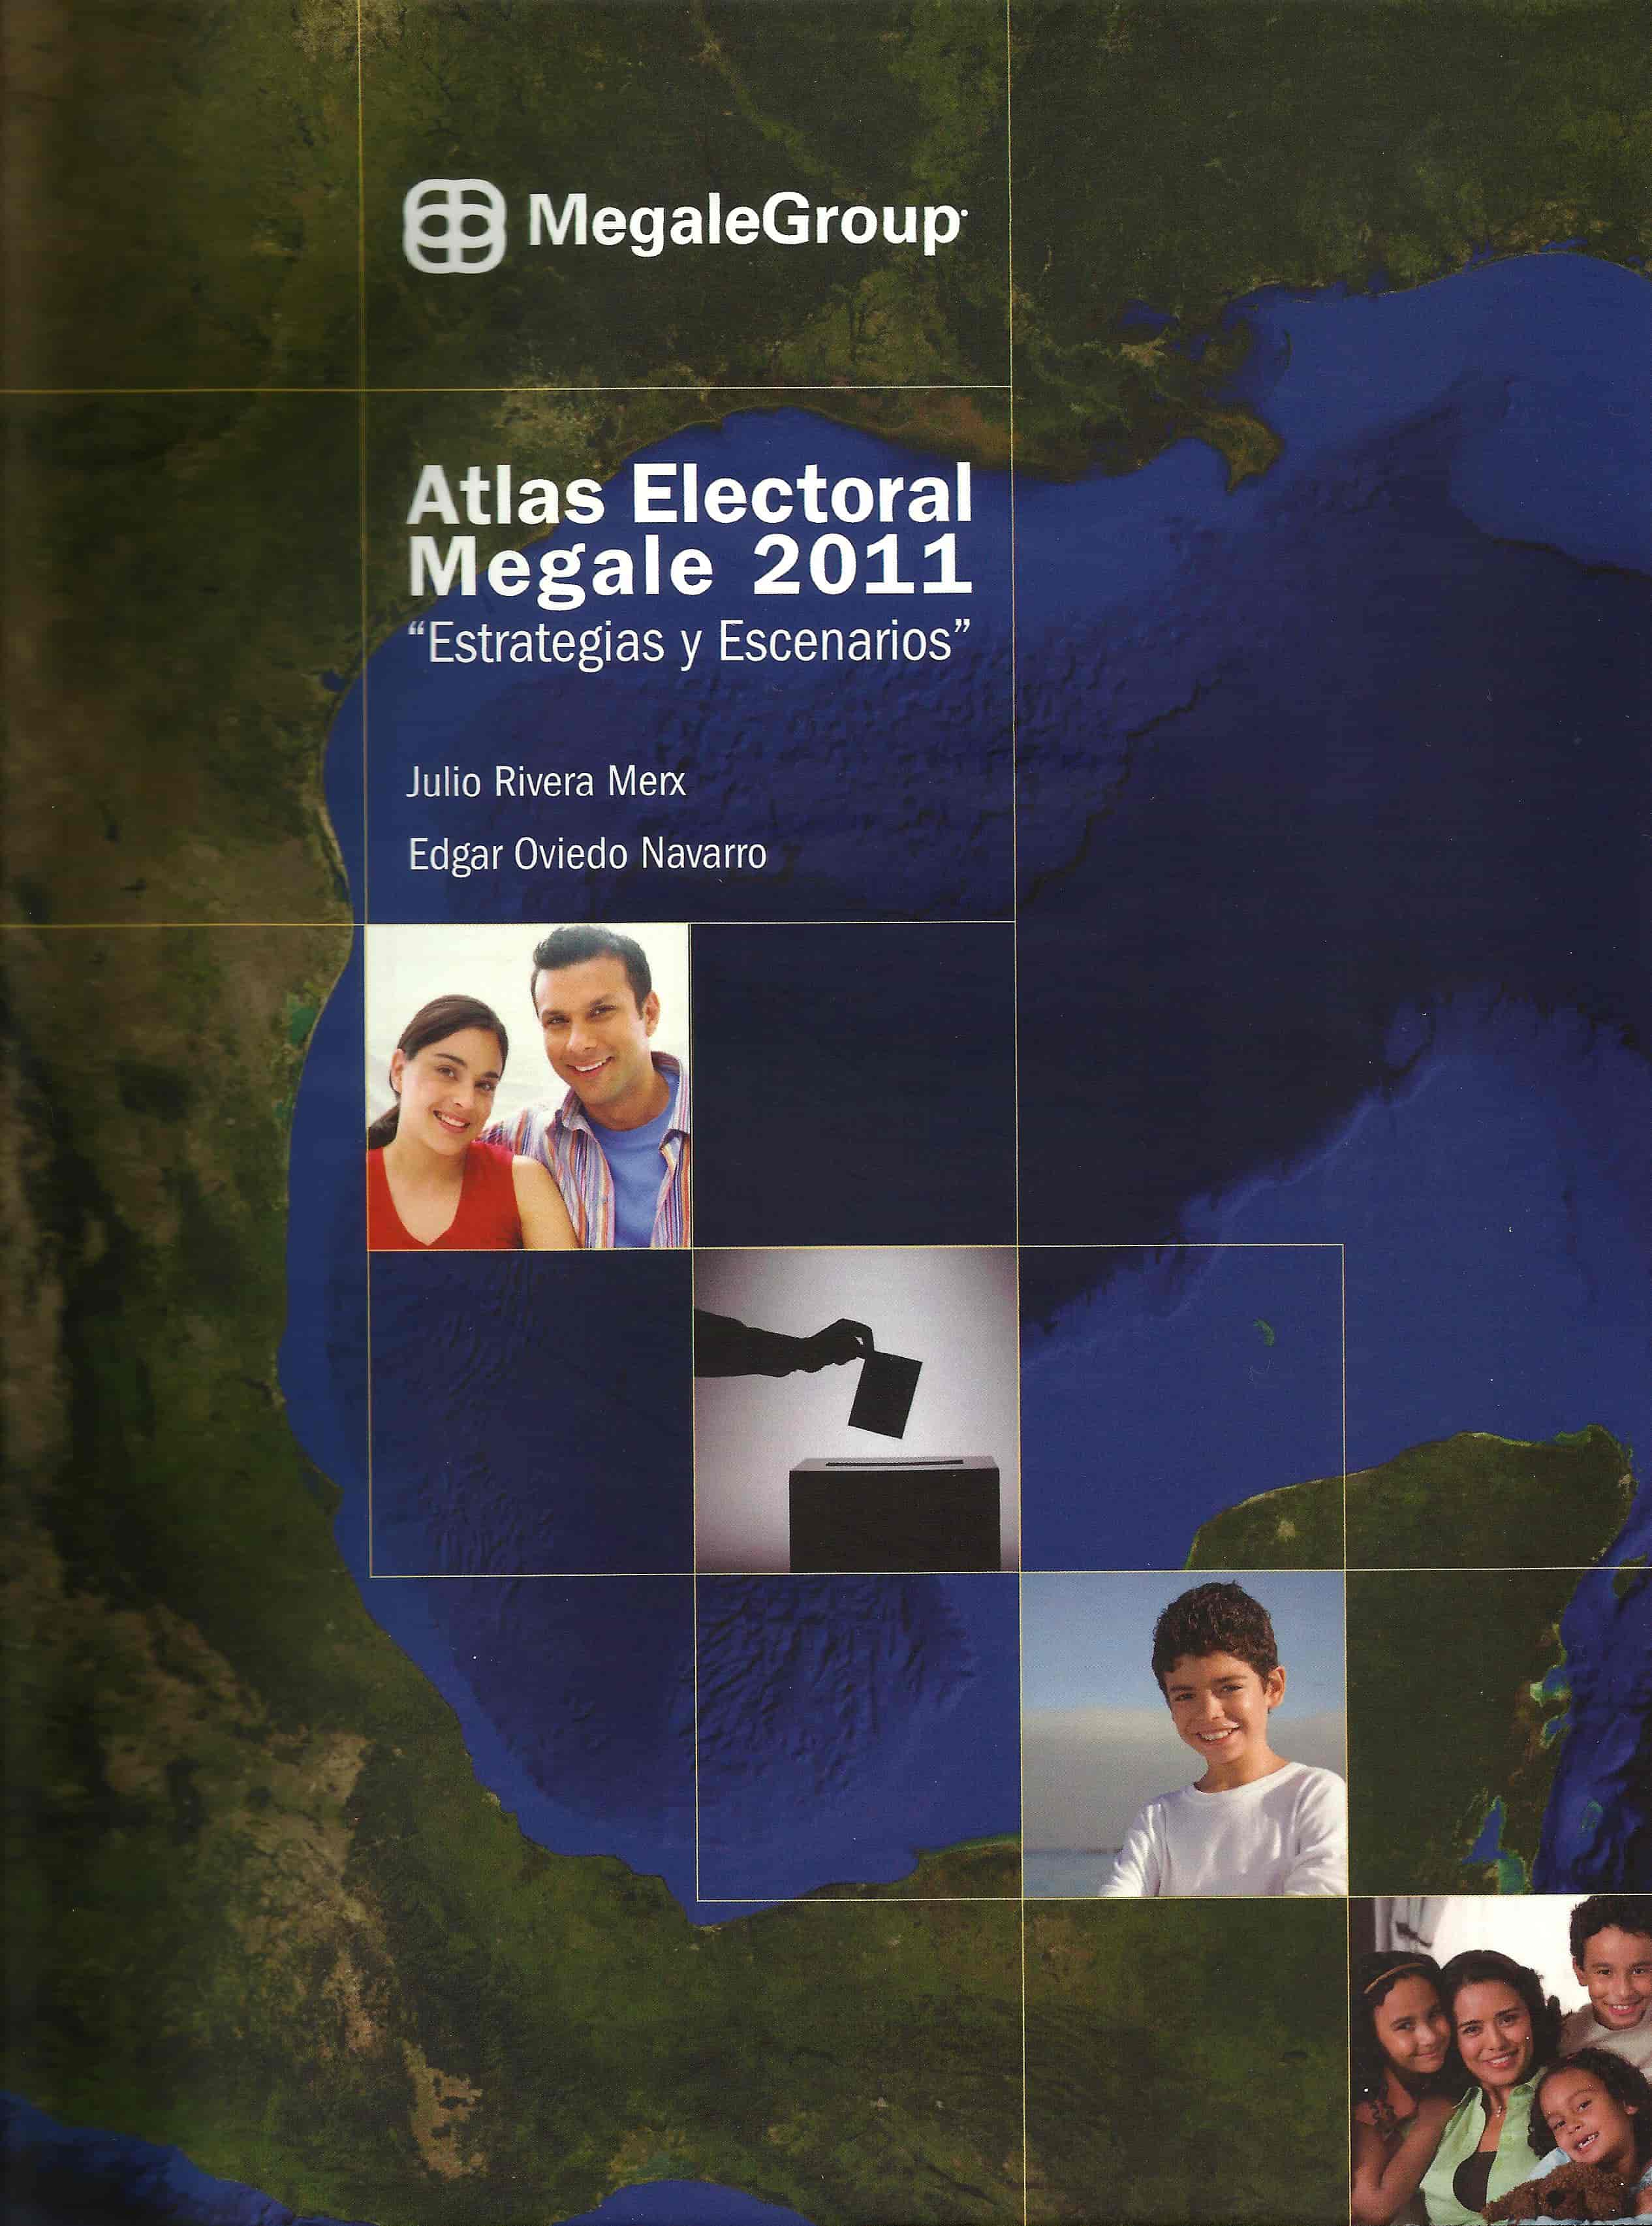 Atlas Electoral by Julio Rivera Merx